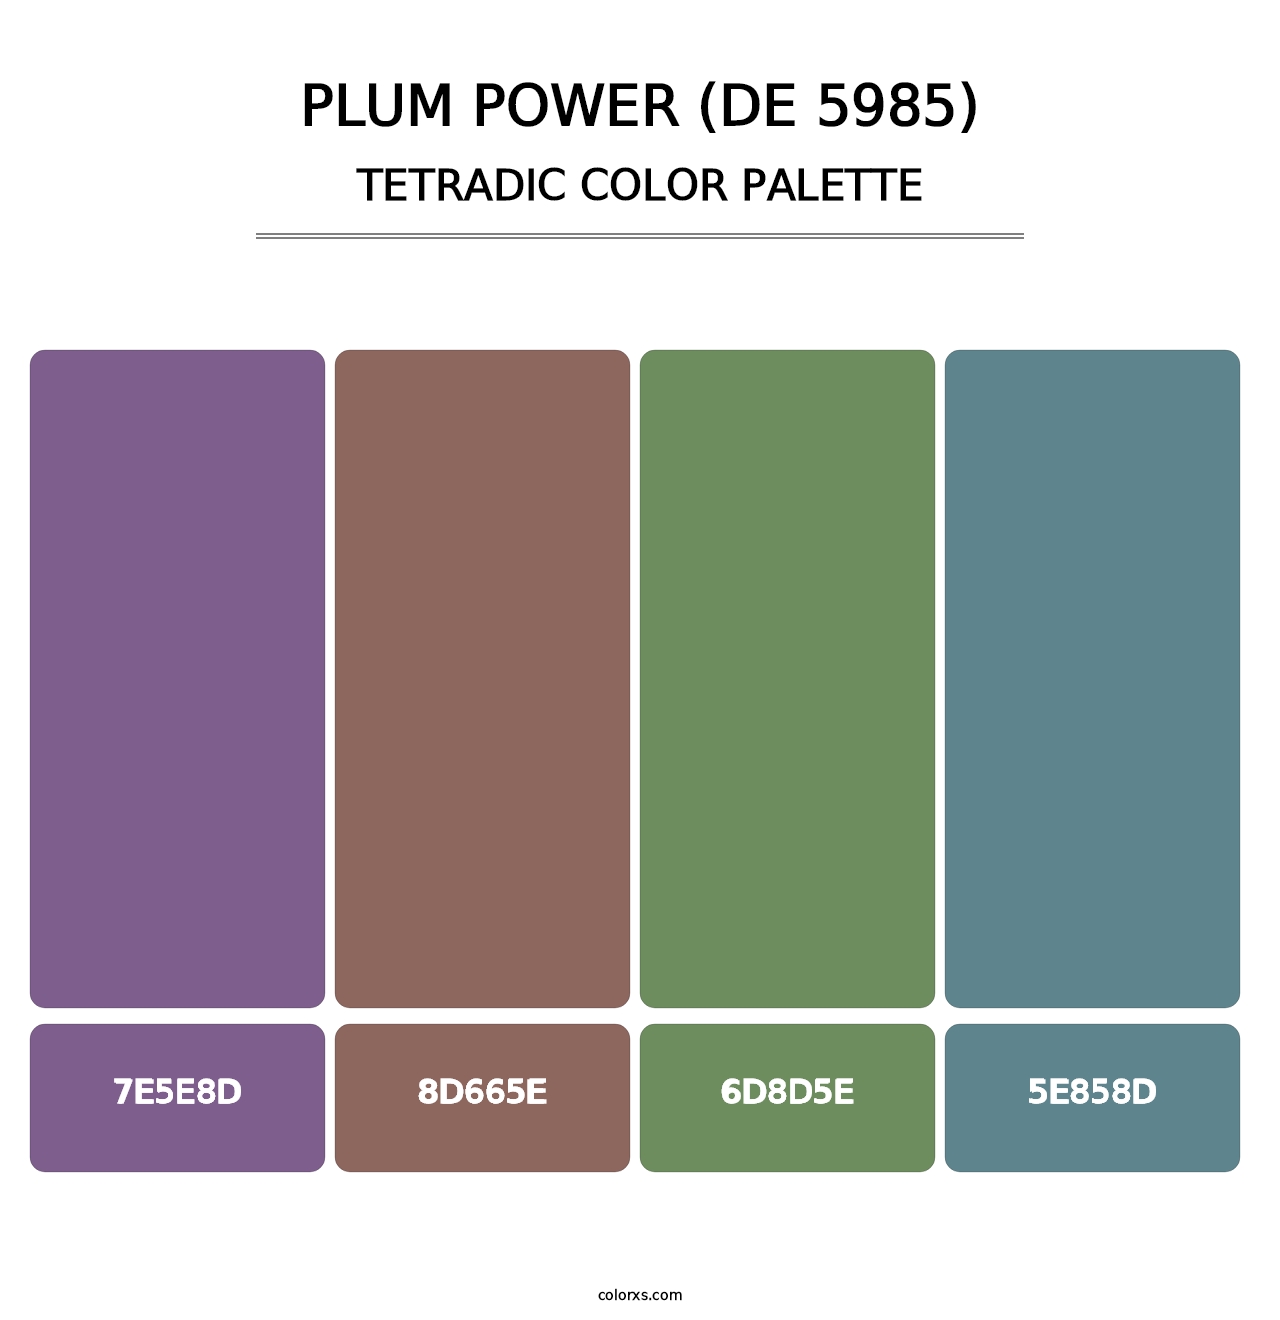 Plum Power (DE 5985) - Tetradic Color Palette